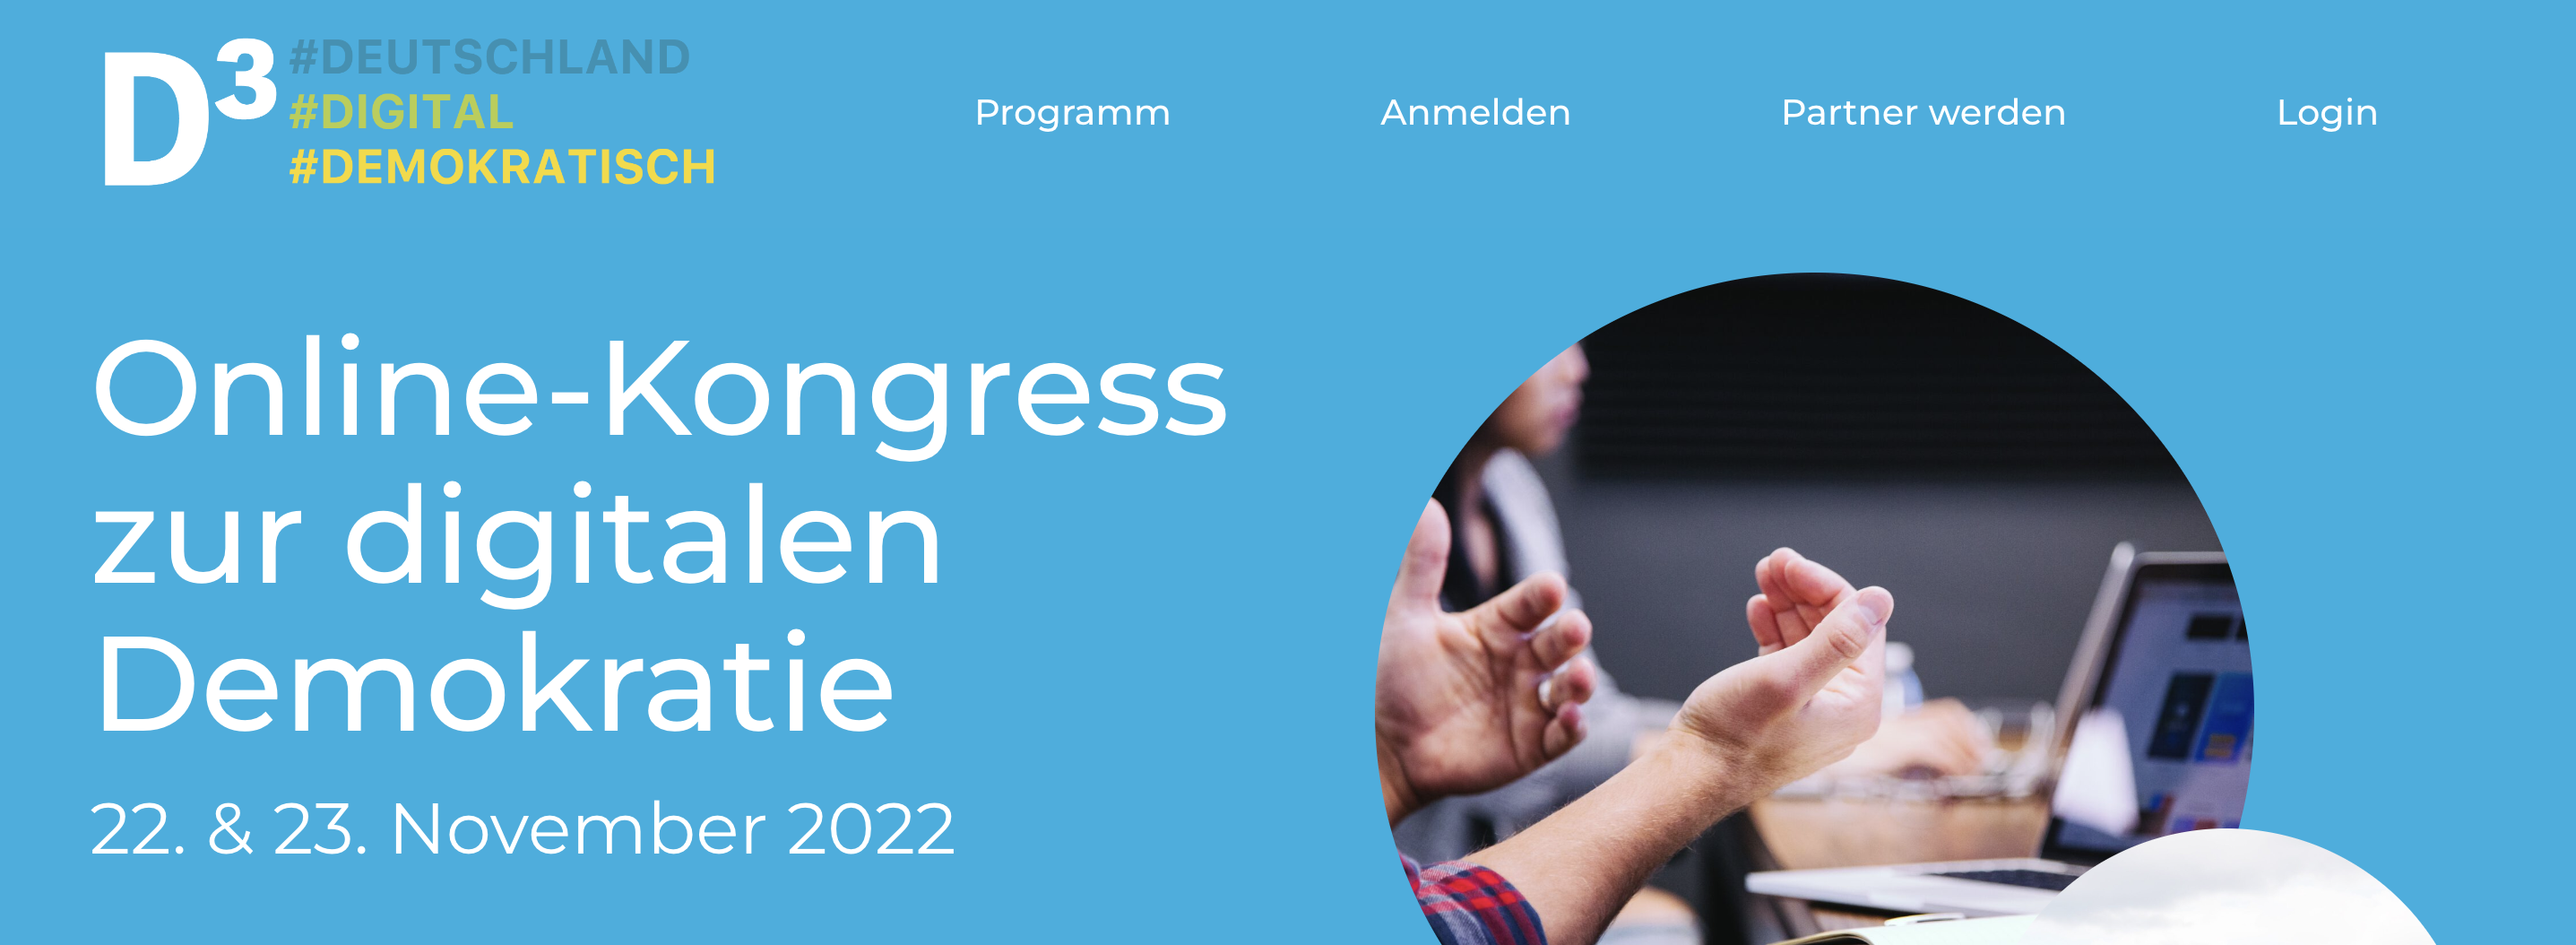 In Weiterleitung: D³-Kongress #deutschland #digital #demokratisch zur Digitalen Demokratie